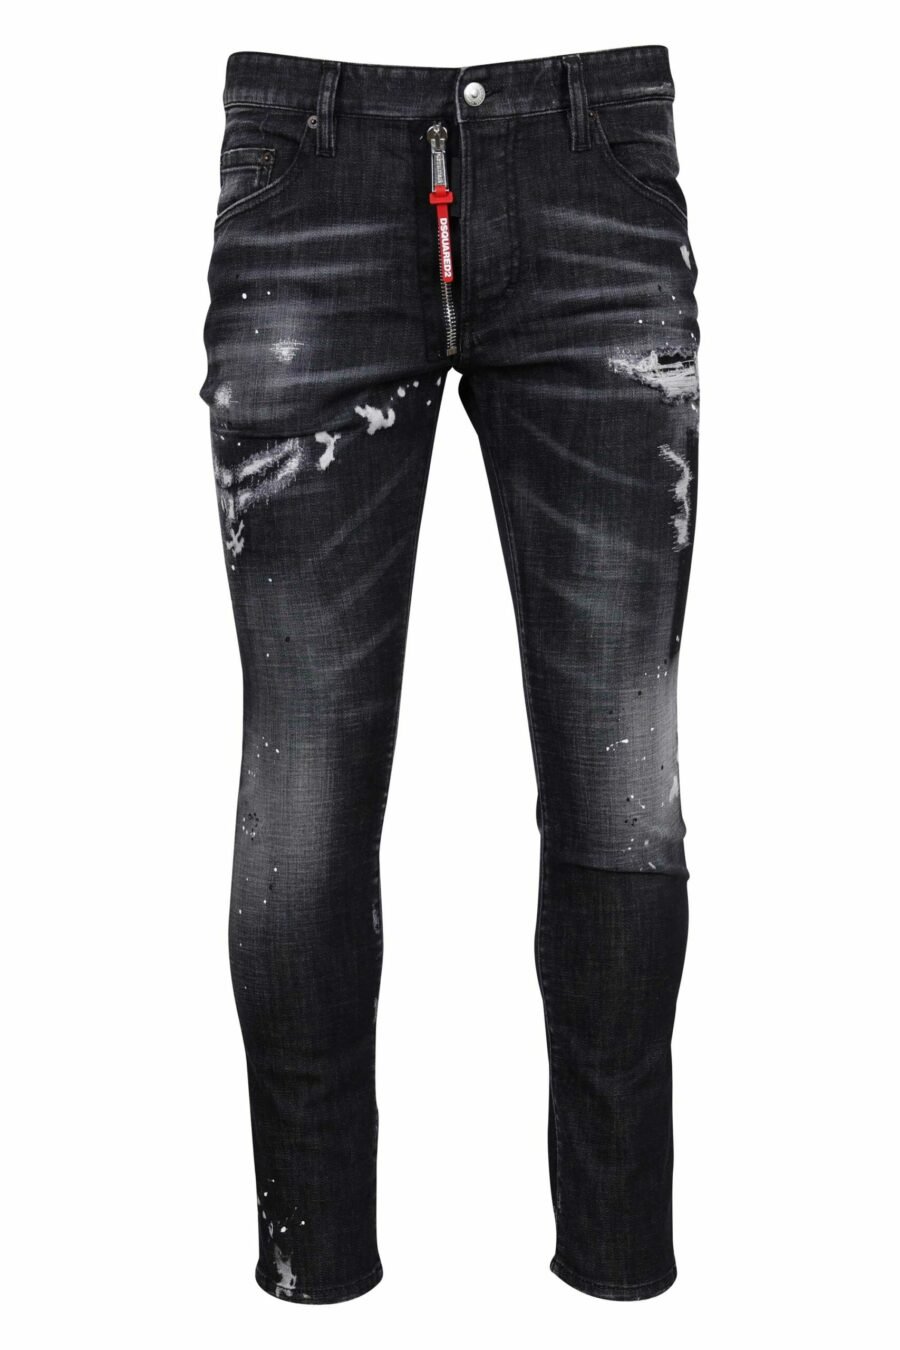 Pantalón negro "skater jean" con rotos y semidesgastado - 8054148300746 scaled